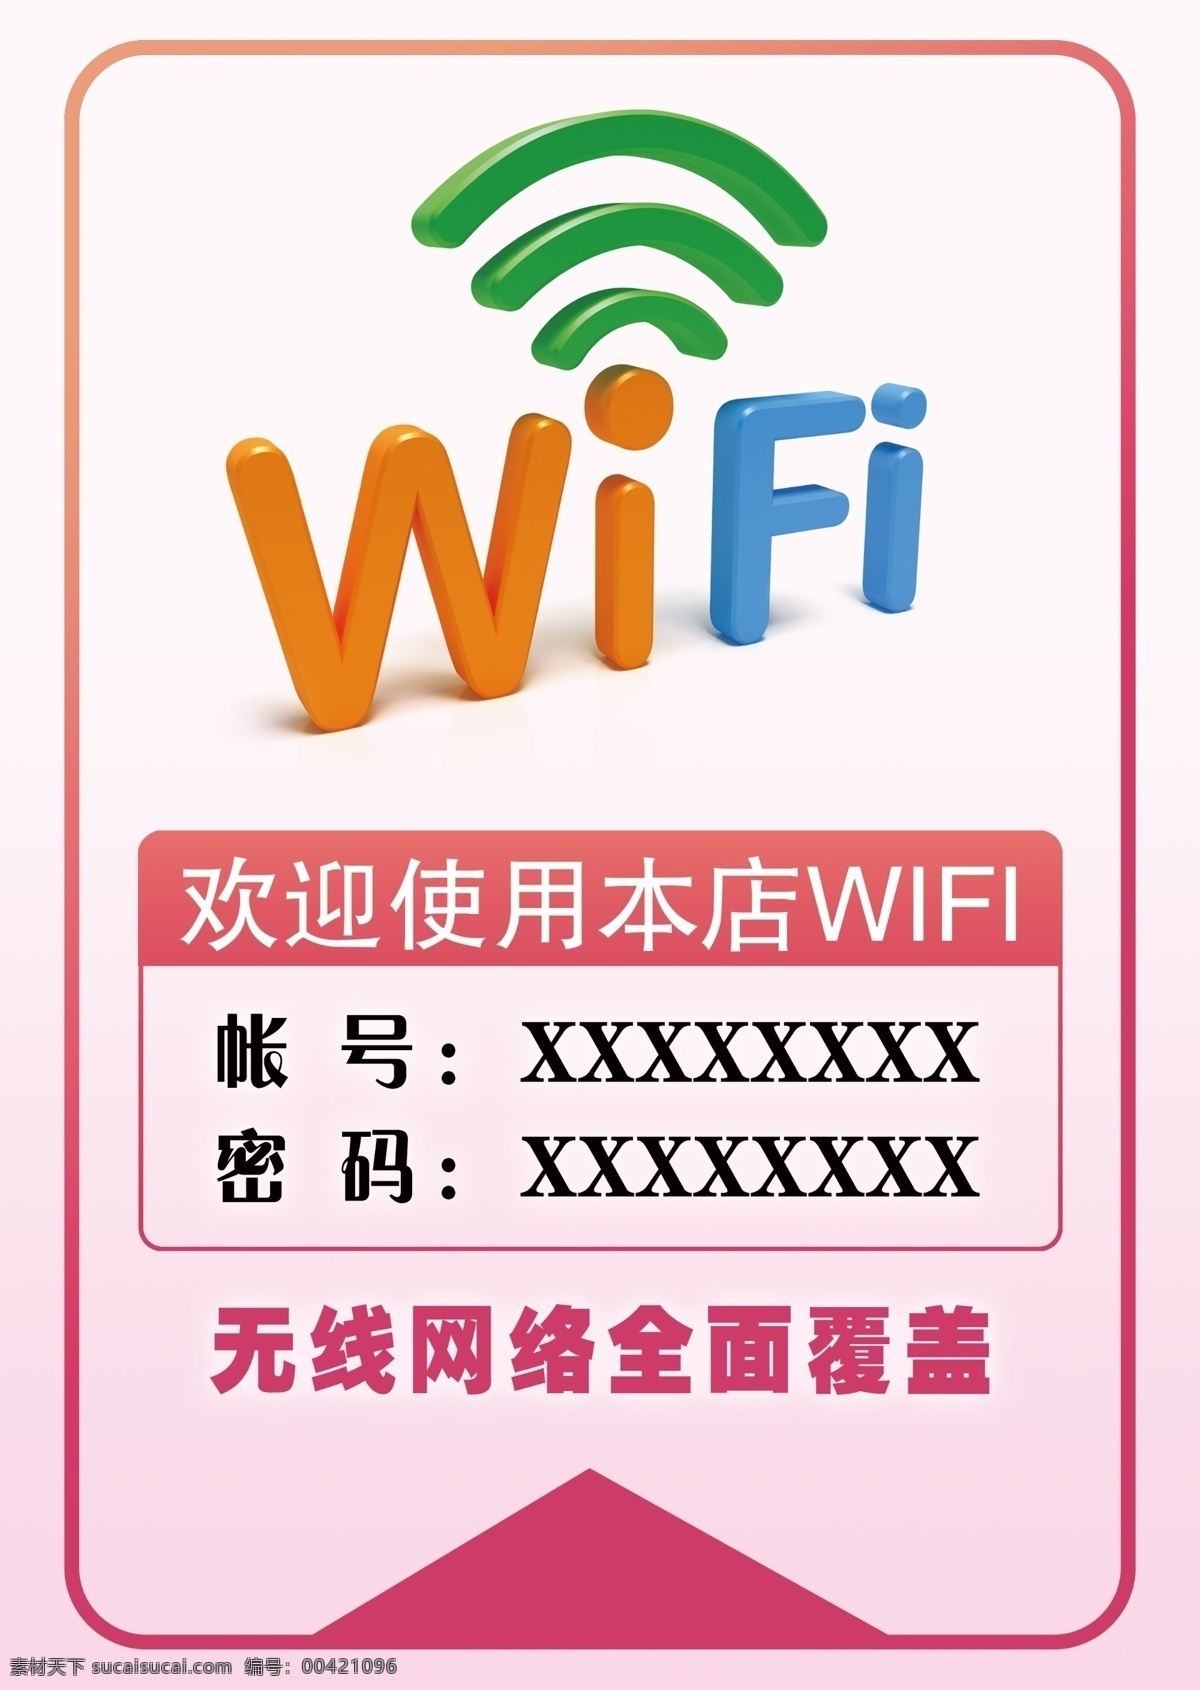 wifi 免费 海报 无线网络 无线